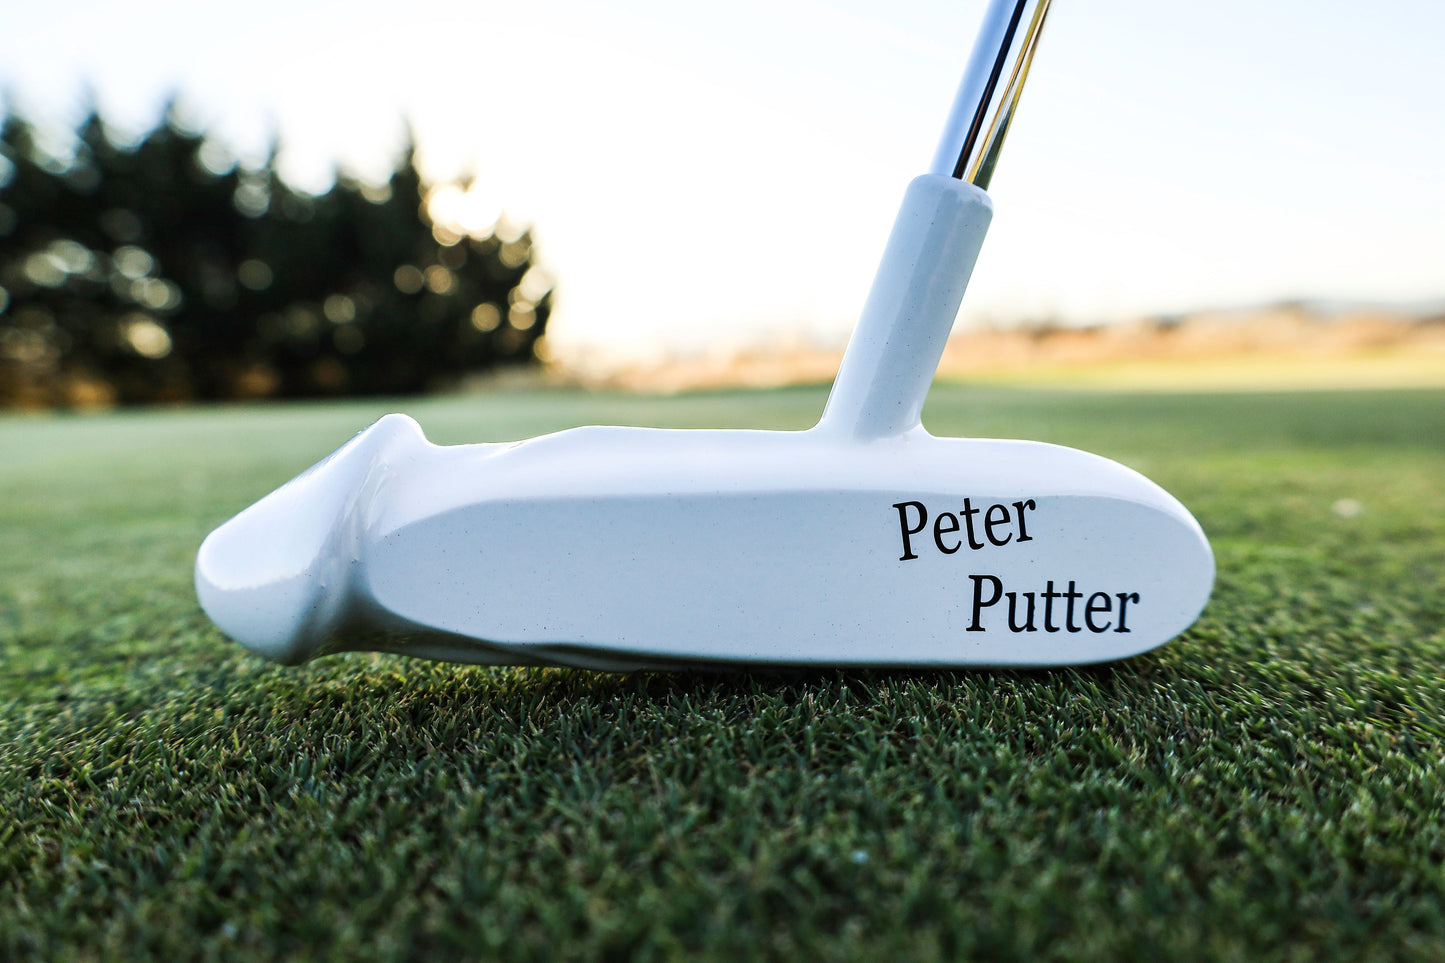 1 Peter Putter